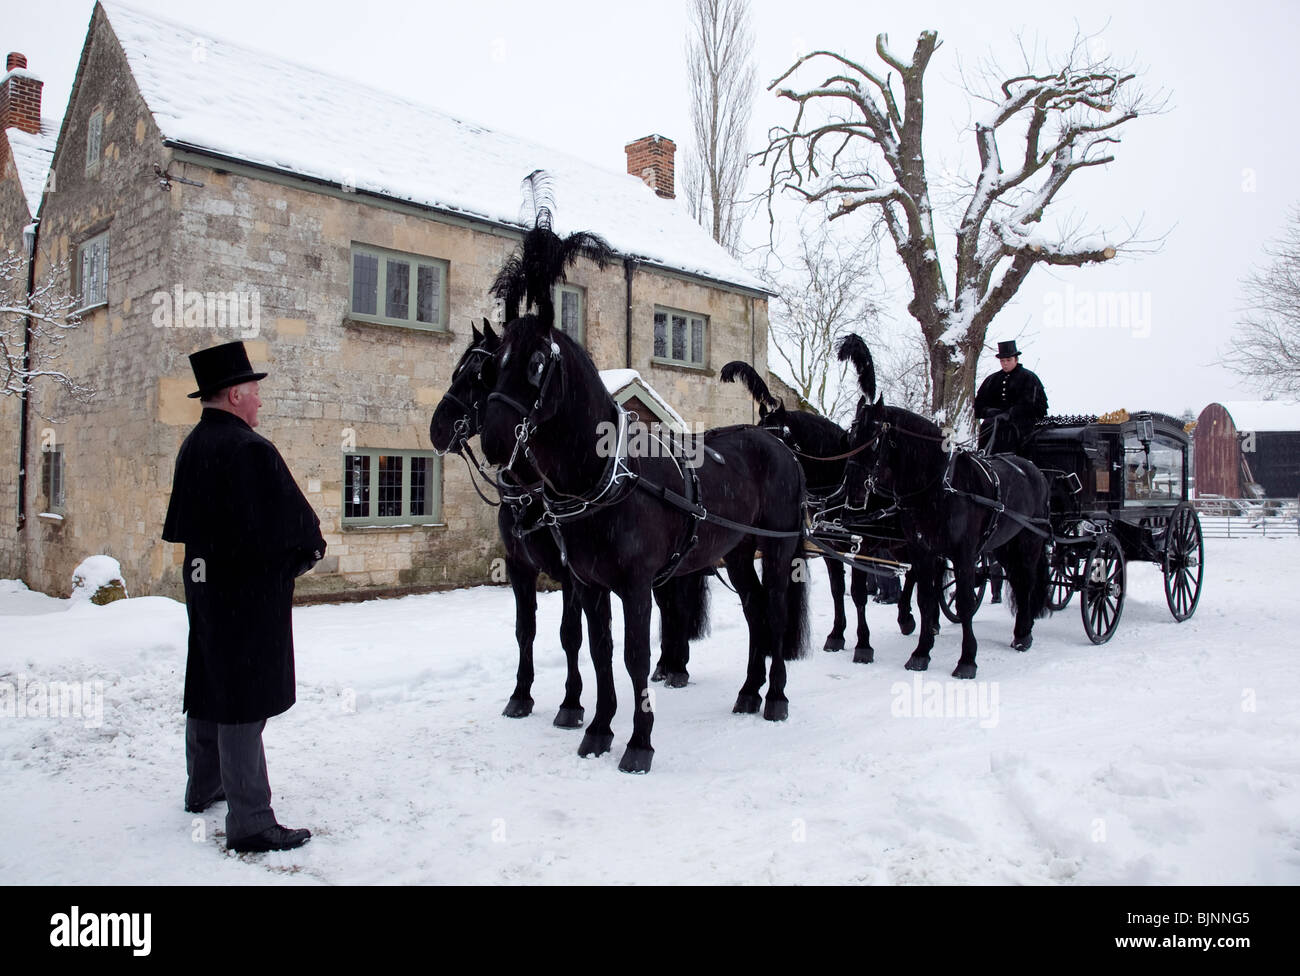 Traditionelle alte altmodische Pferdekutsche Beerdigung Schlitten im Schnee mit vier Pferden bereit für Gottesdienst verlassen Stockfoto